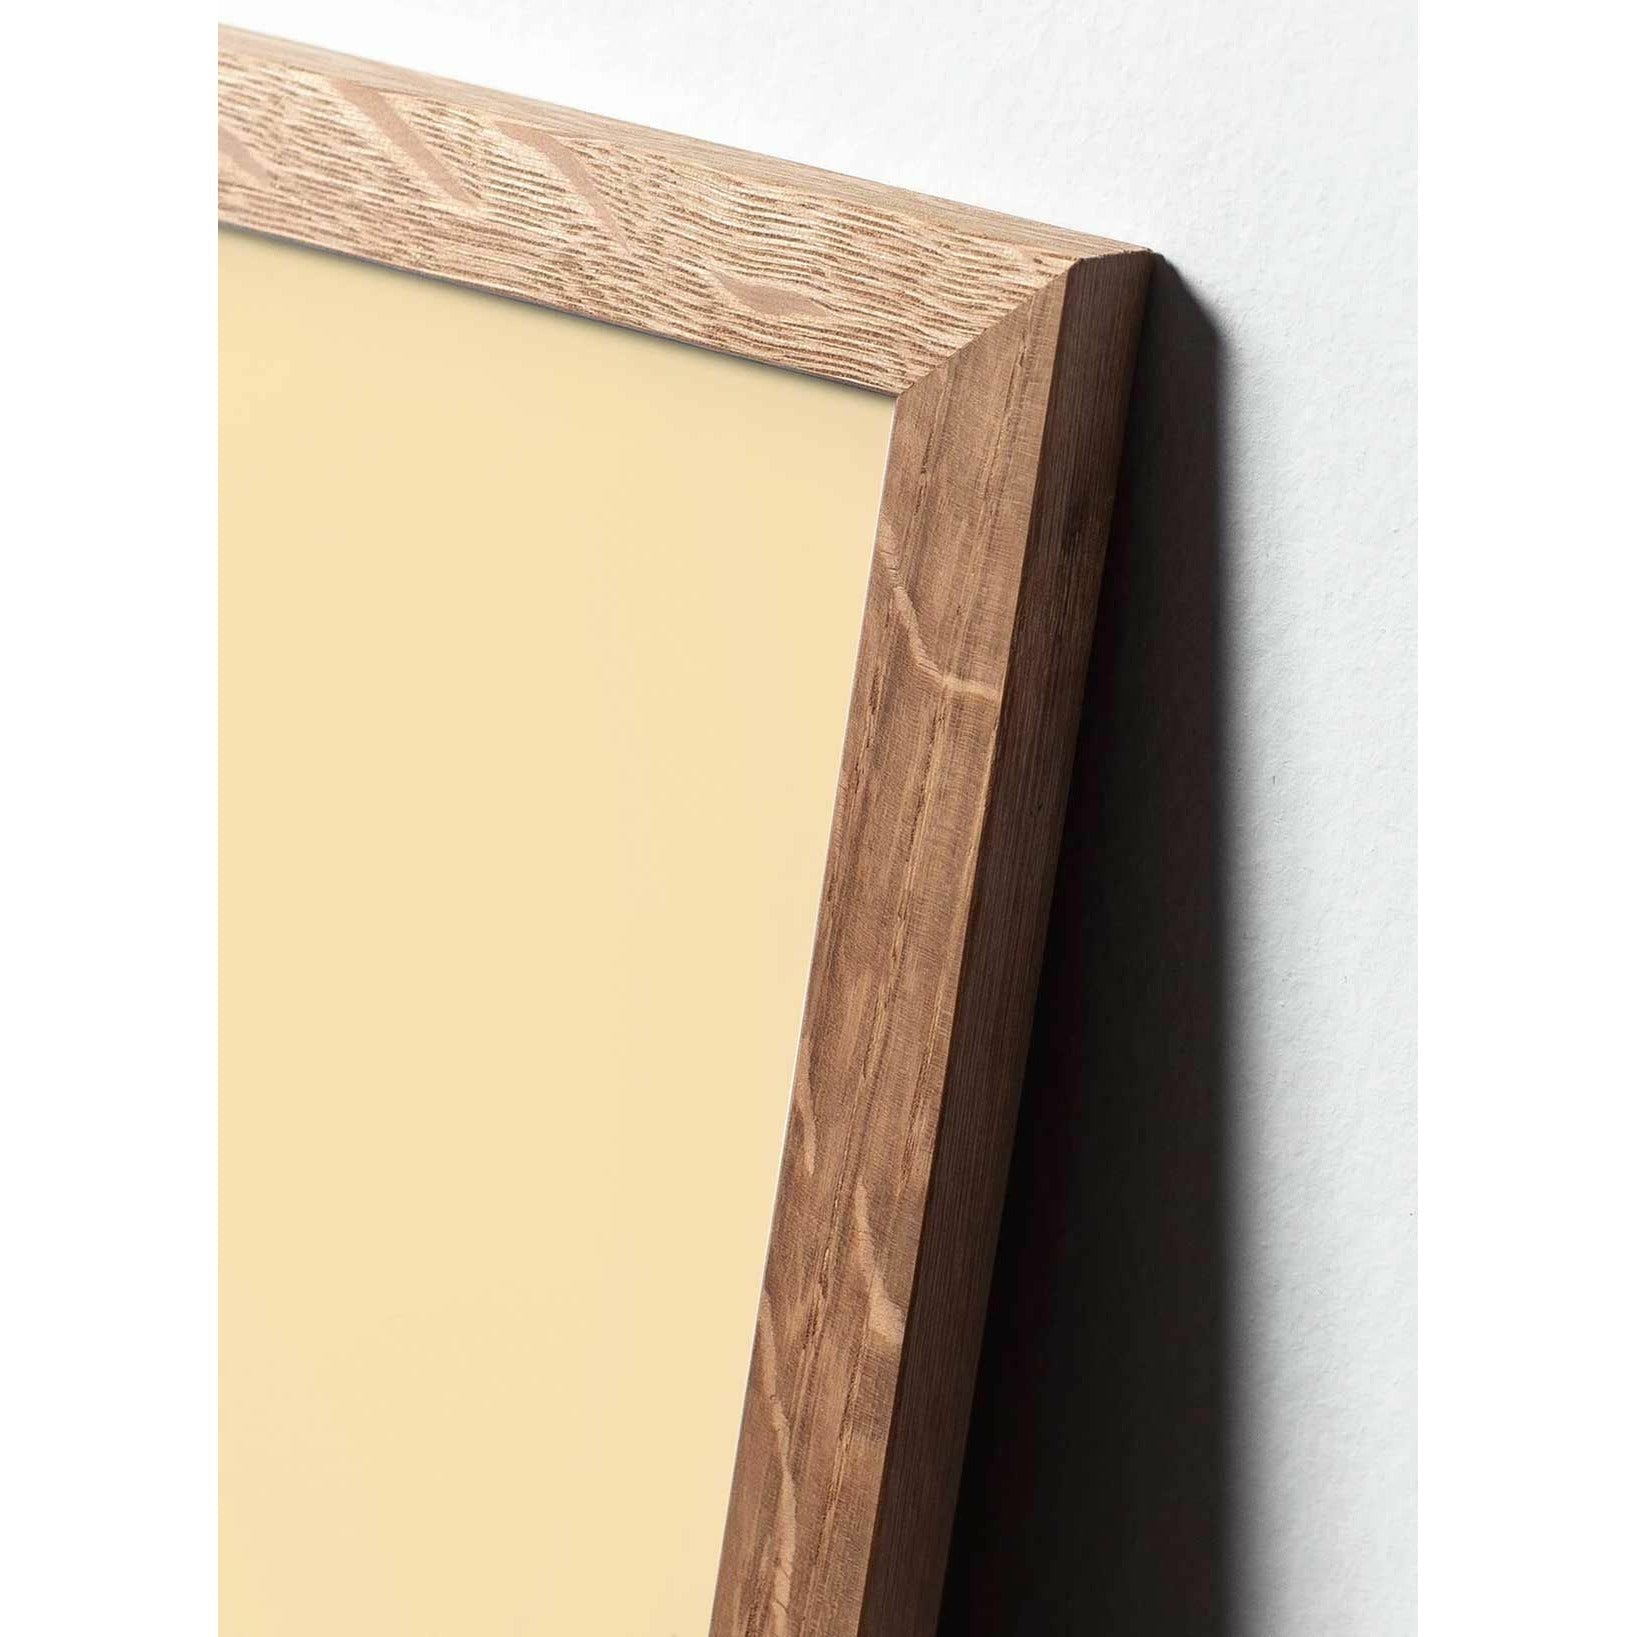 Pomysły plakat linii stożkowej, rama wykonana z jasnego drewna 50x70 cm, białe tło